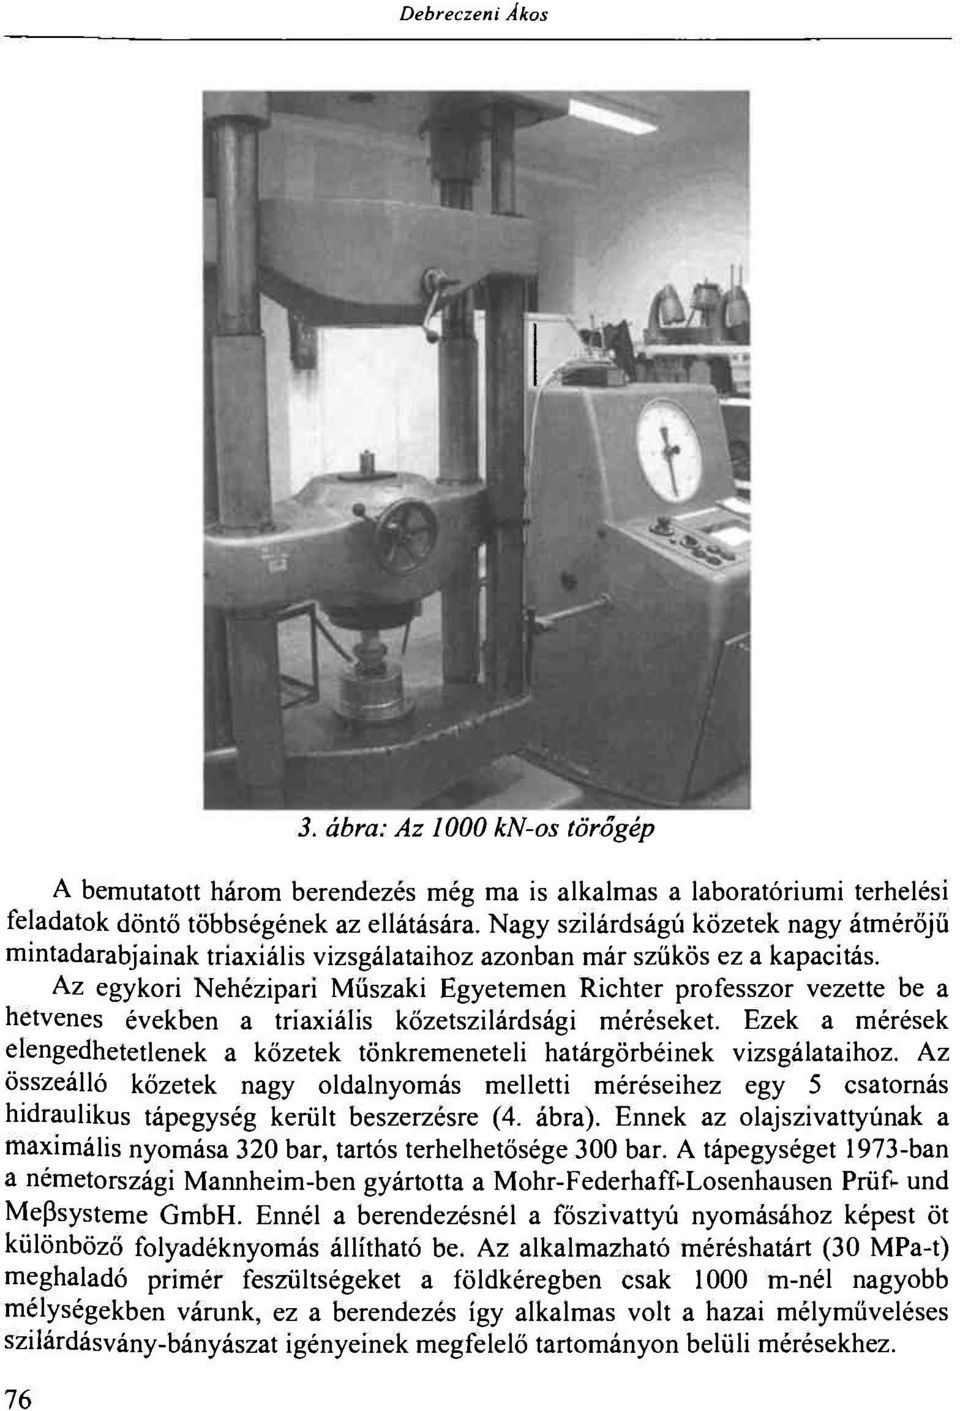 Az egykori Nehézipari Műszaki Egyetemen Richter professzor vezette be a hetvenes években a triaxiális kőzetszilárdsági méréseket.